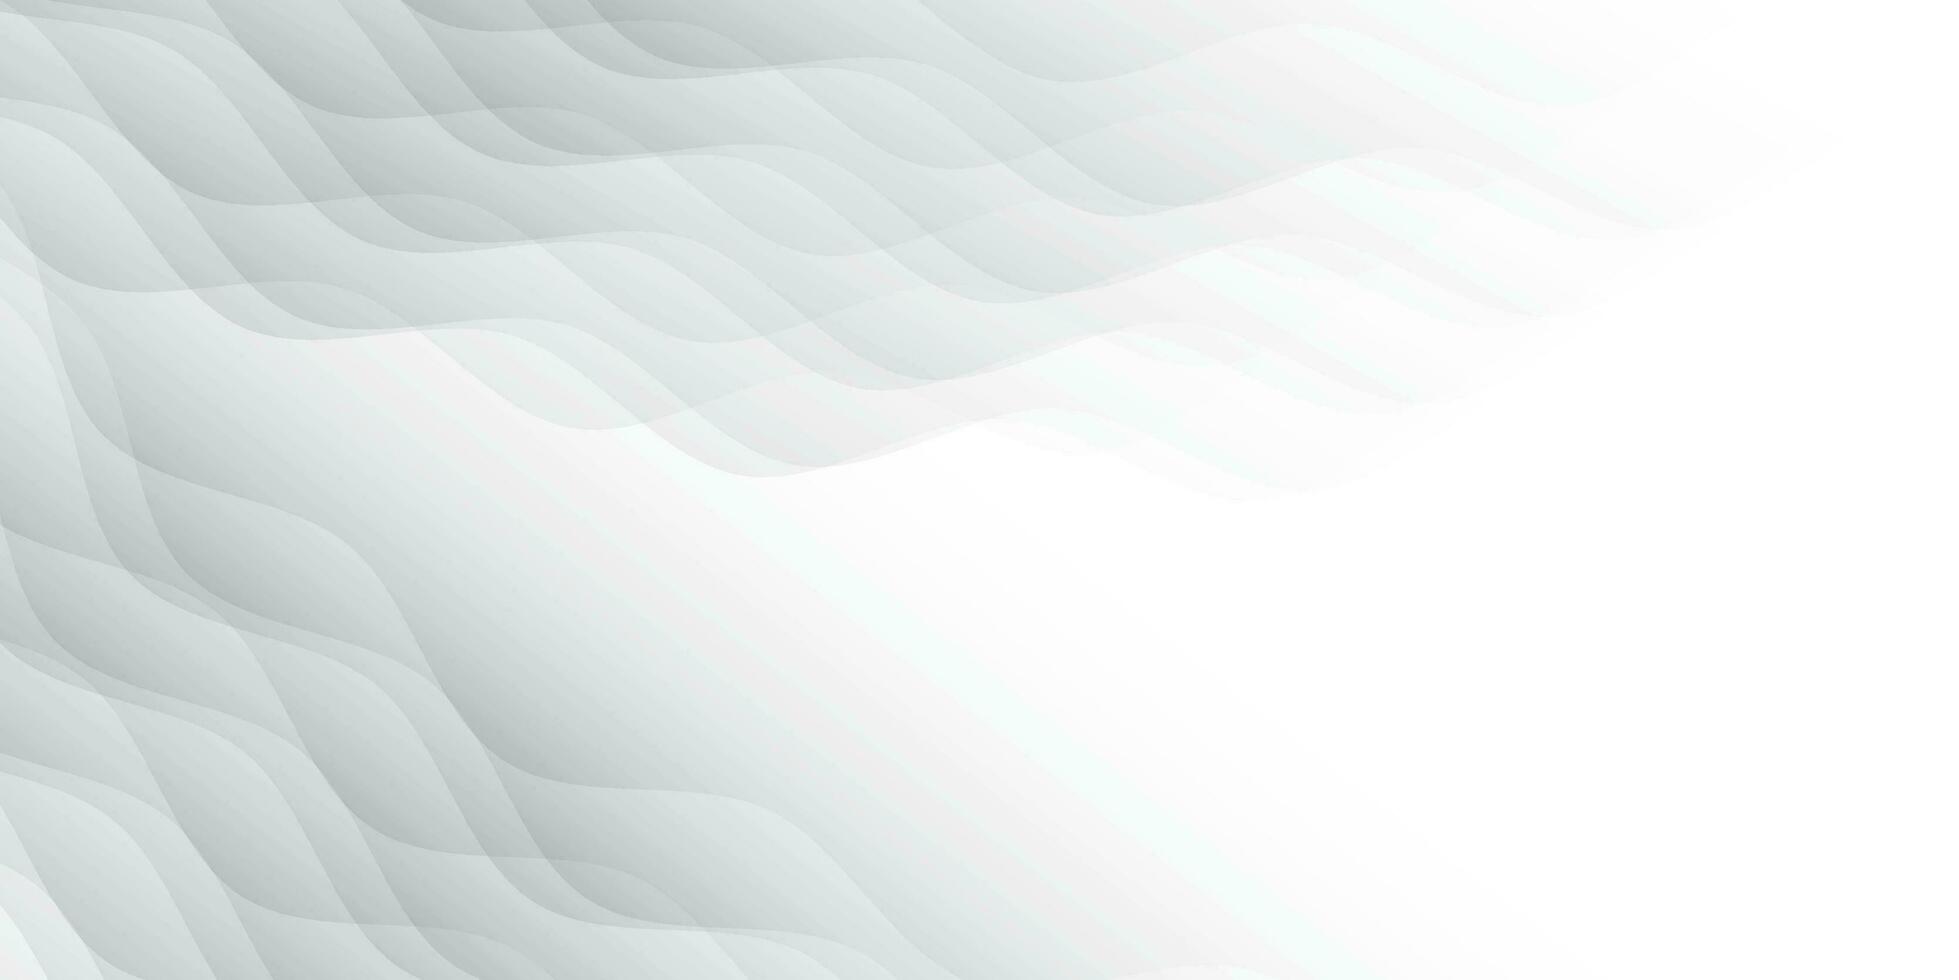 abstrakt vit och grå Färg, modern design Ränder bakgrund med geometrisk runda form, vågig linje. vektor illustration.